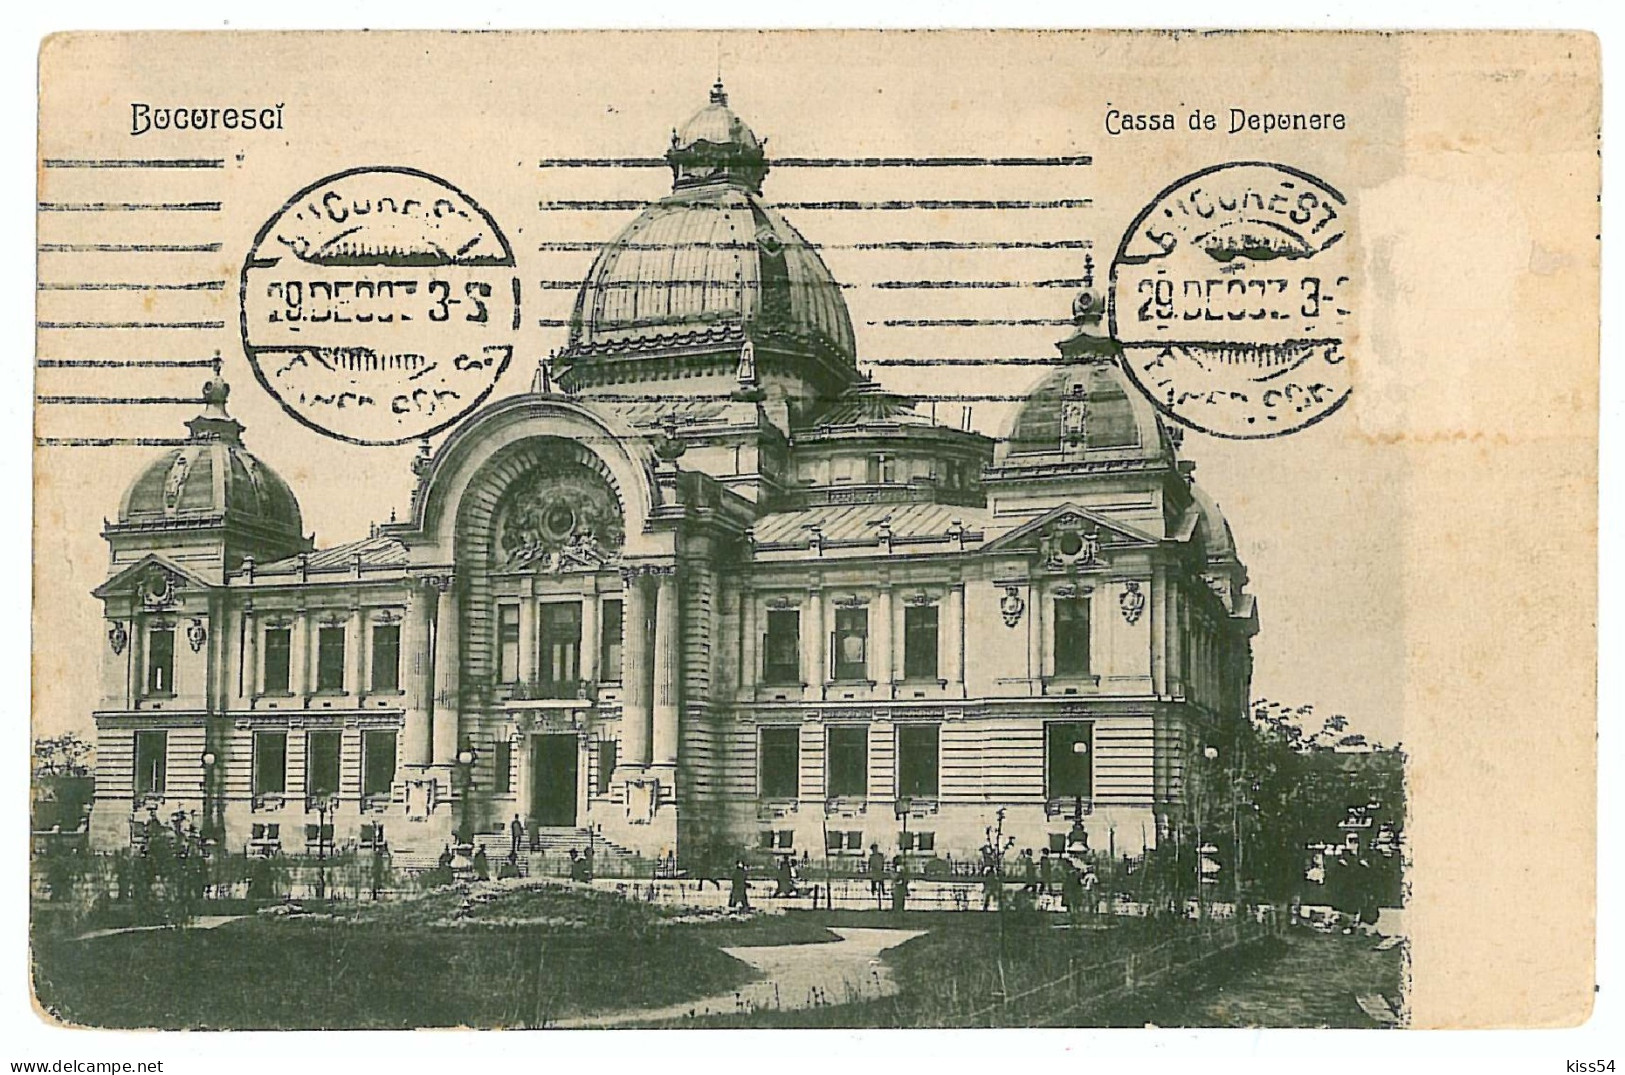 RO 40 - 782 BUCURESTI, C.E.C. Romania - Old Postcard - Used - 1907 - Rumänien